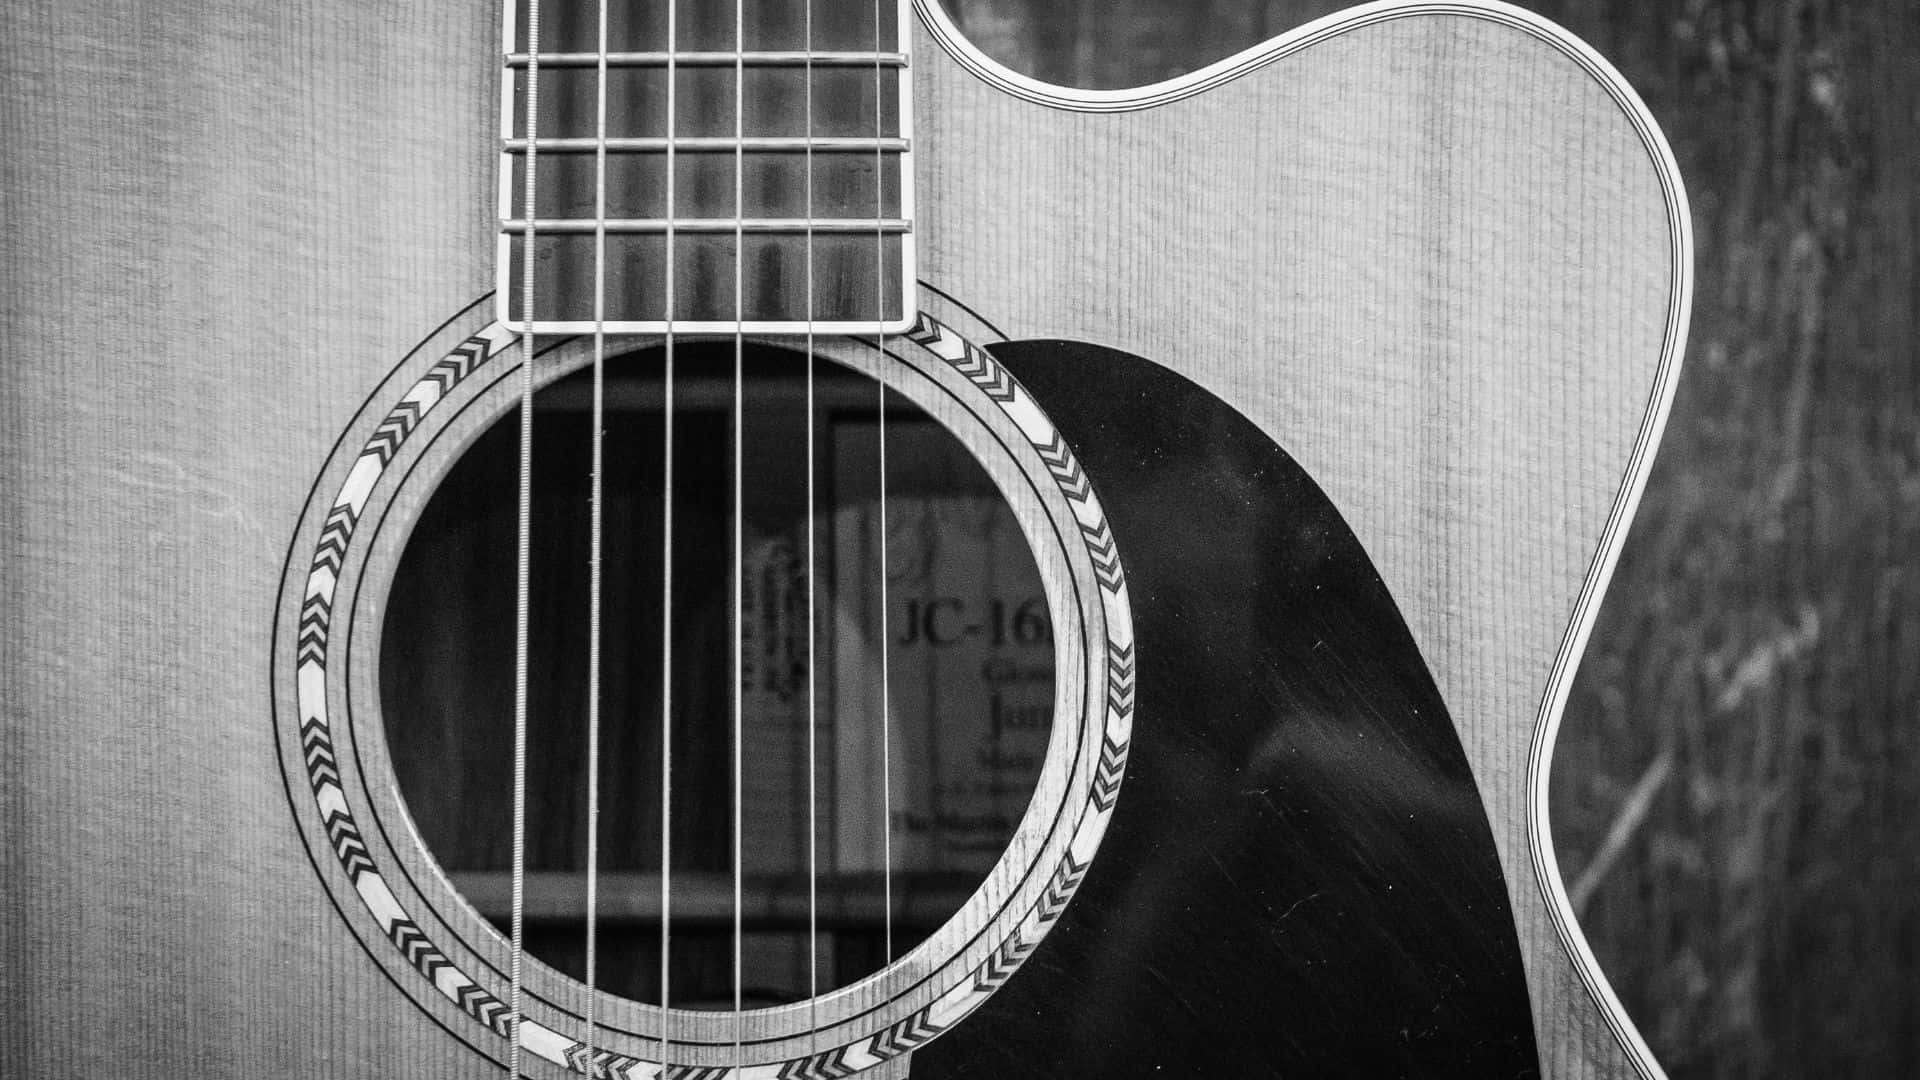 Imagenimpactante De Una Guitarra En Blanco Y Negro. Fondo de pantalla